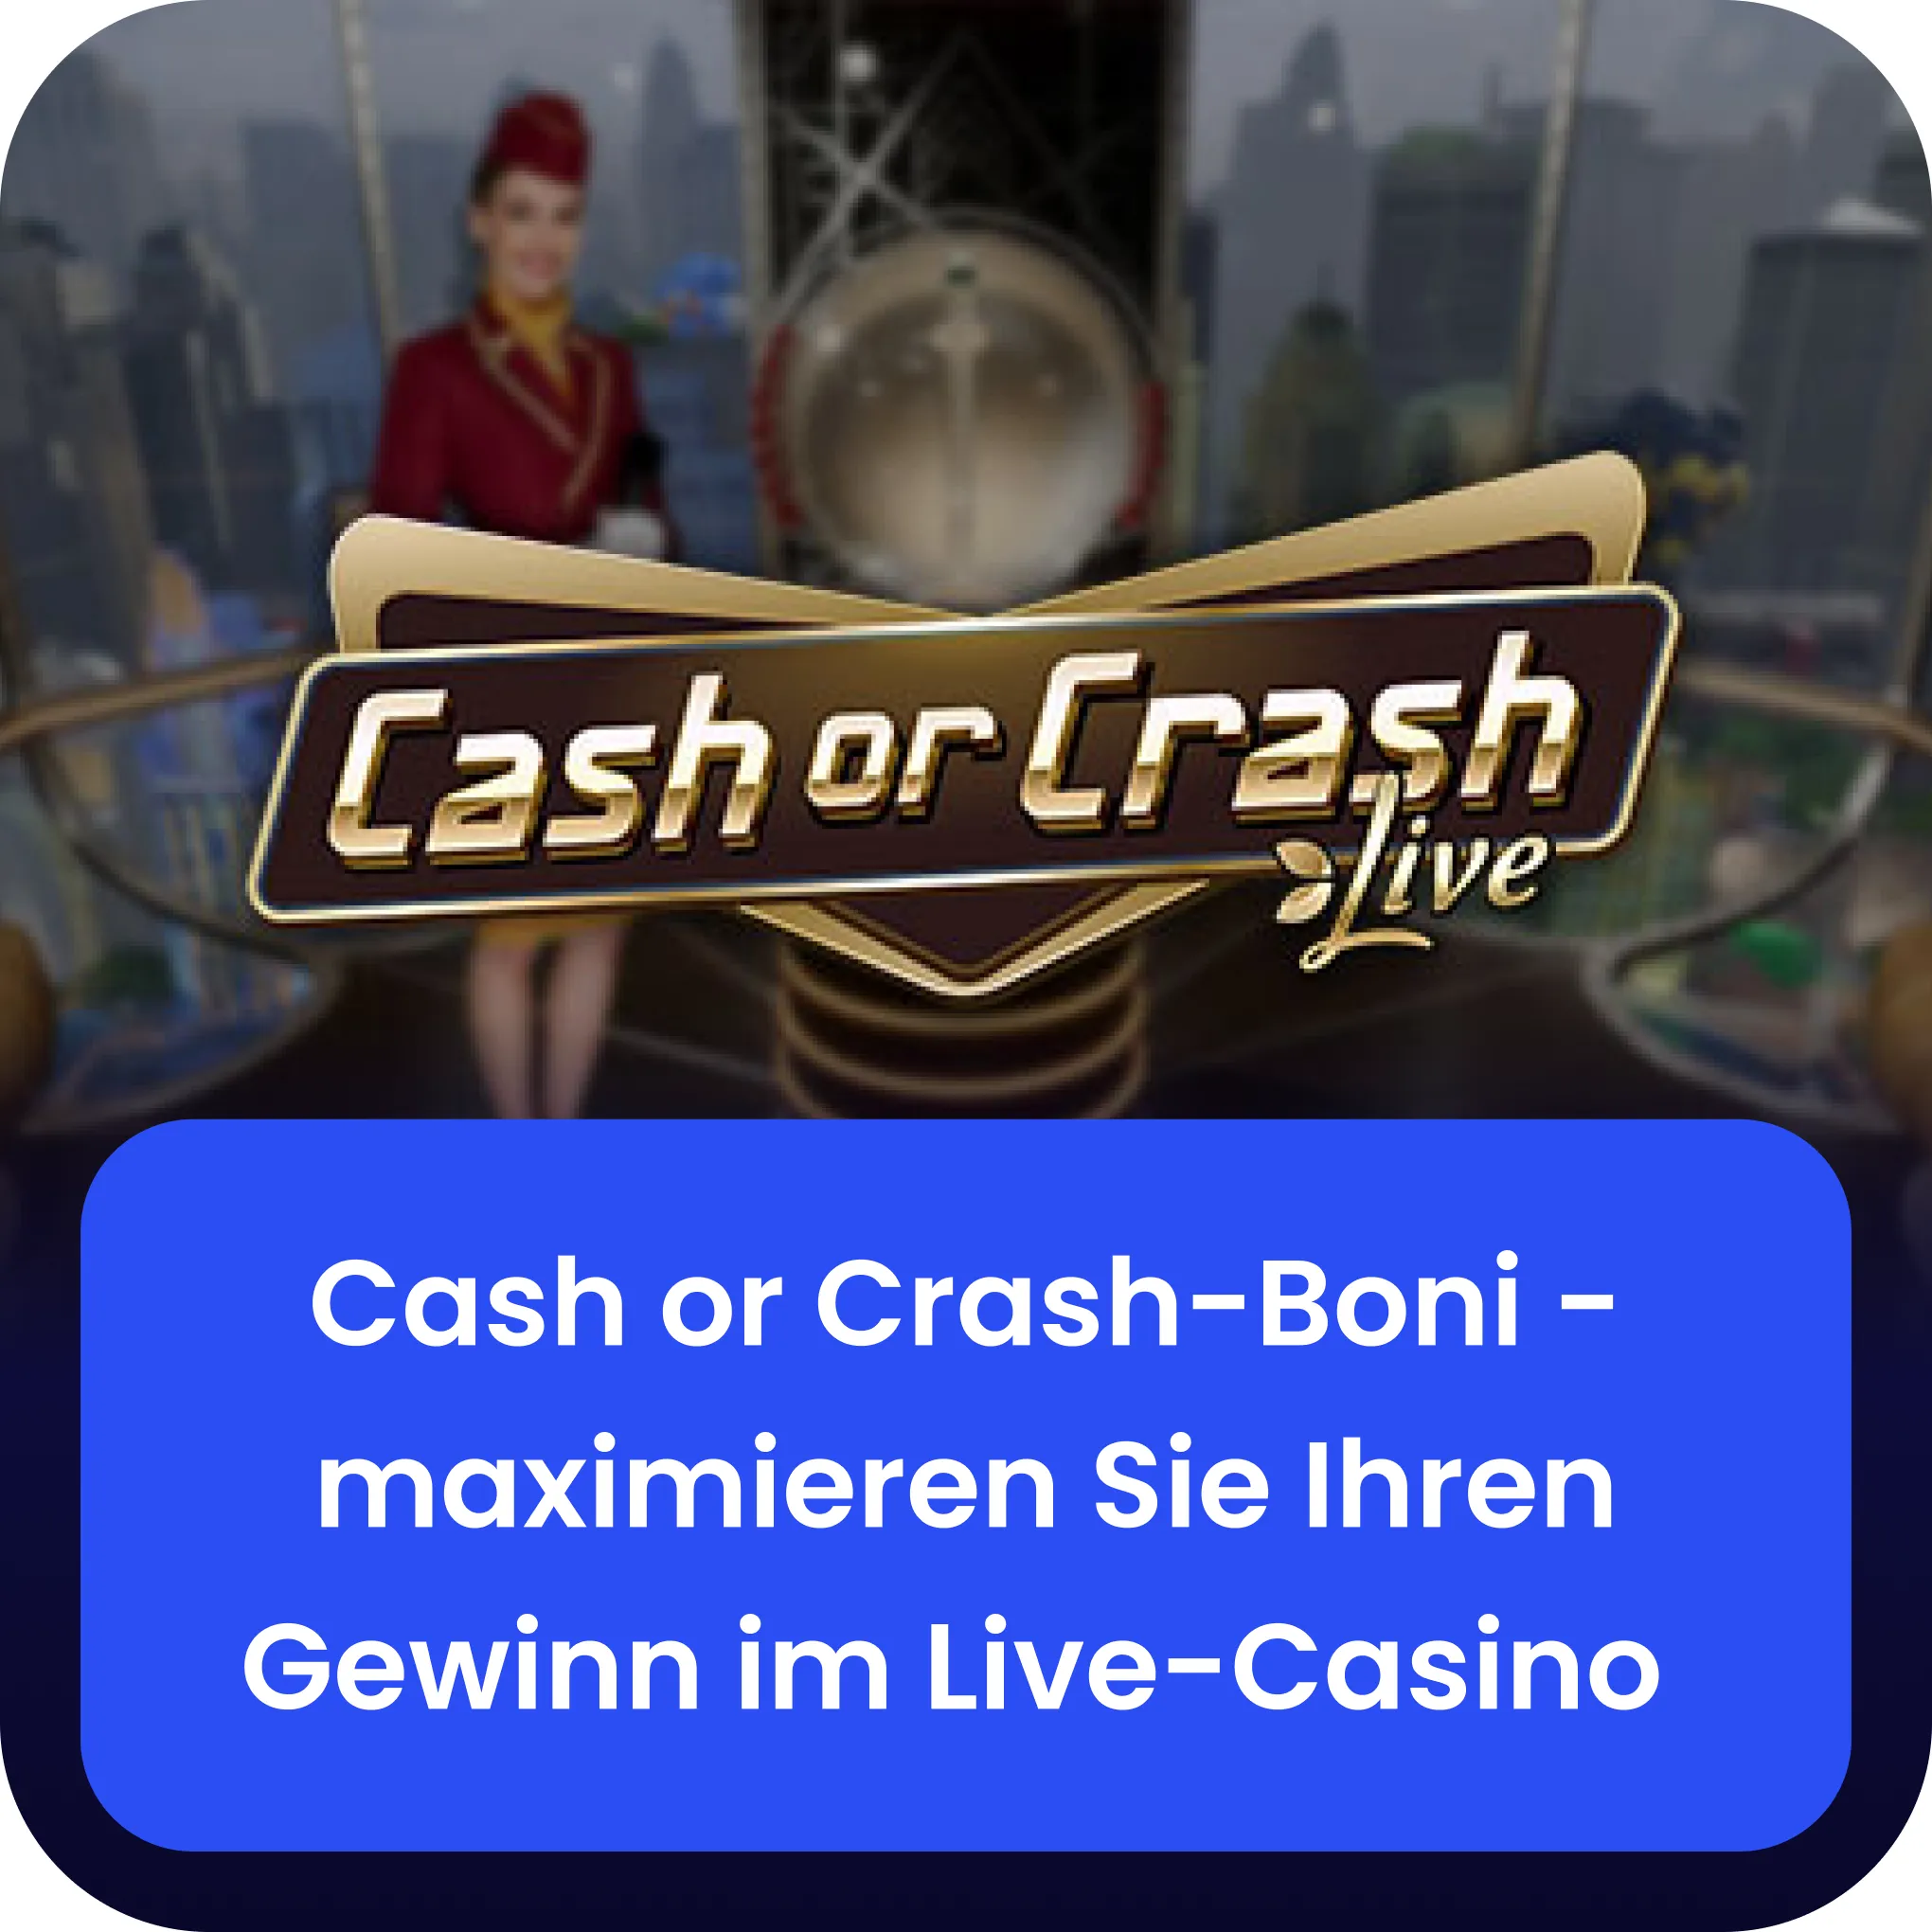 Cash or Crash gewinn